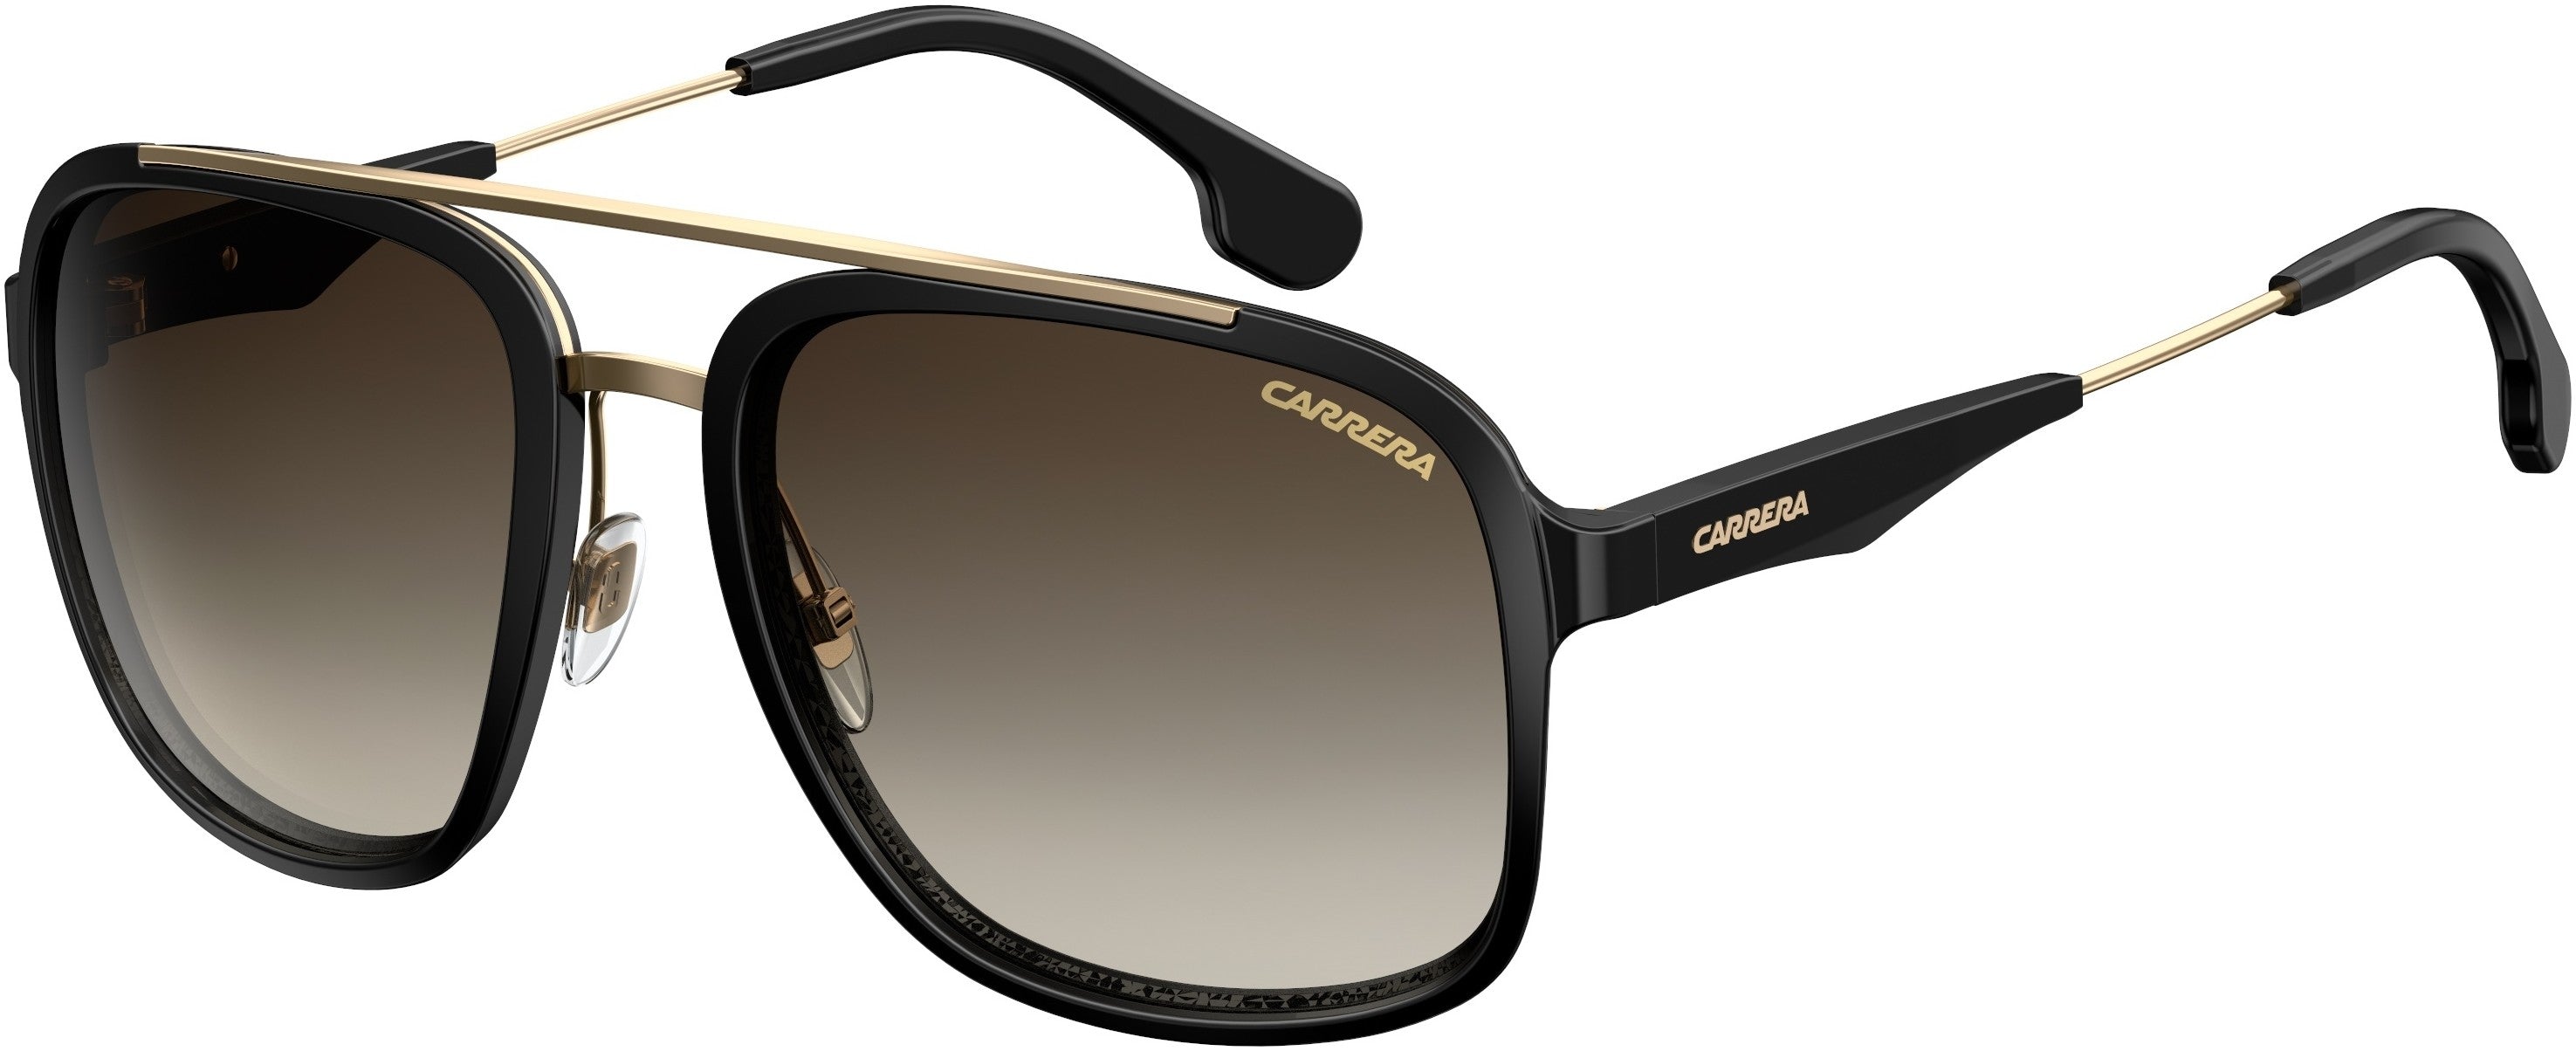  Carrera 133/S Square Sunglasses 02M2-02M2  Black Gold (HA Brown Gradient)